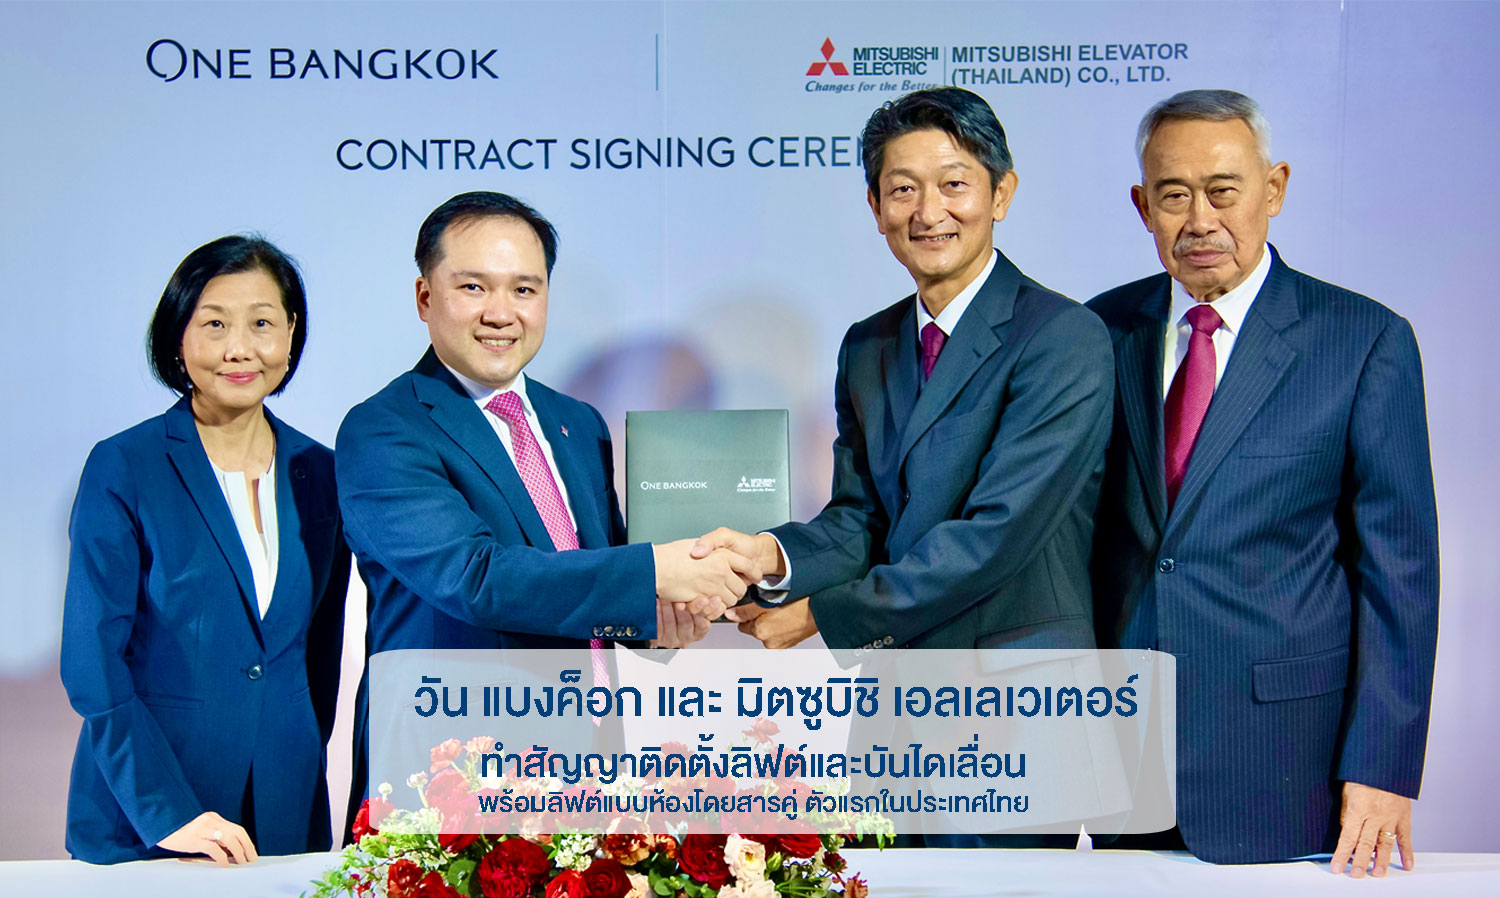 มิตซูบิชิ เอลเลเวเตอร์ ได้รับความมั่นใจจาก วัน แบงค็อก - One Bangkok  ทำสัญญาติดตั้งลิฟต์และบันไดเลื่อน พร้อมลิฟต์แบบห้องโดยสารคู่ ตัวแรกในประเทศไทย